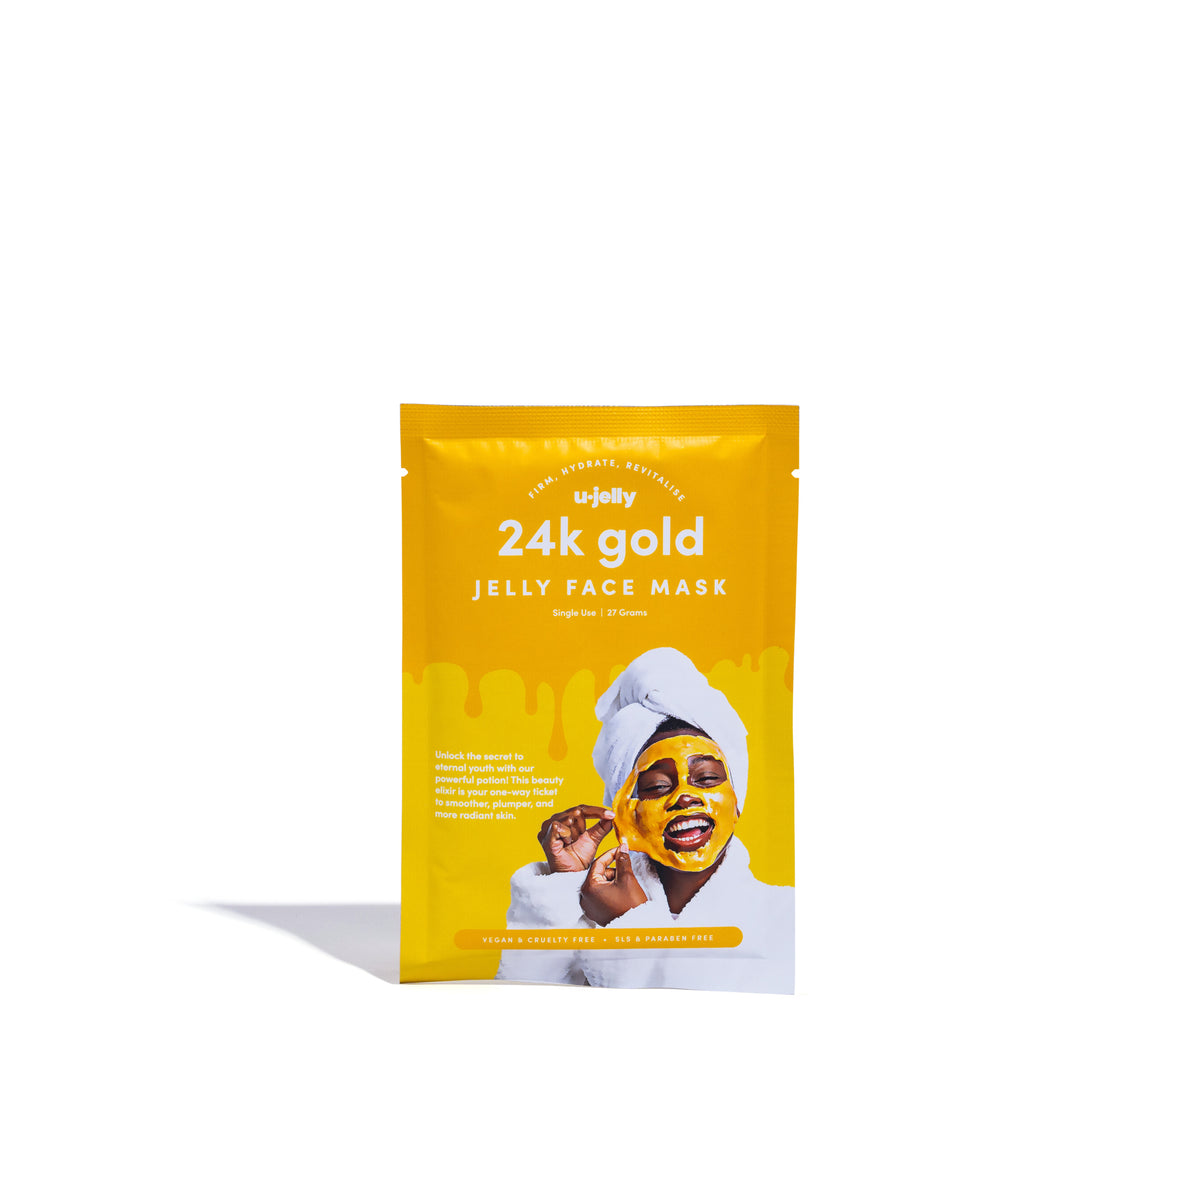 24k Gold Jelly Face Mask (Single Serve Sachet)